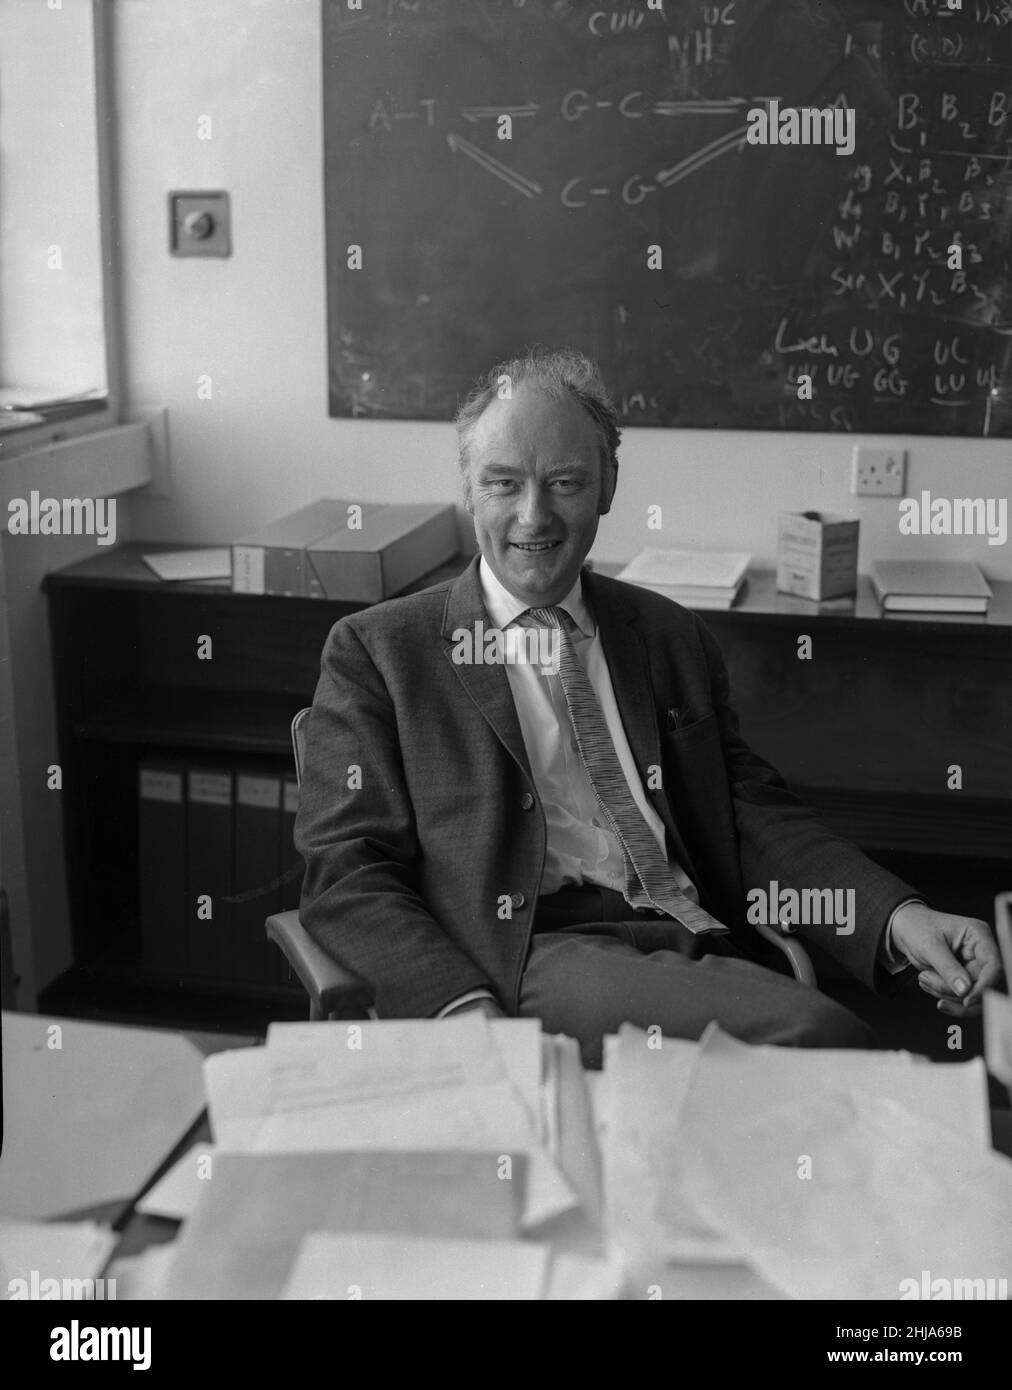 Il dottor Francis Crick ha visto qui al laboratorio di biologia molecolare della Cambridge University, dopo l'annuncio che lui e James Watson avevano ricevuto il Premio Nobel per la Pace per la Medicina per la loro scoperta della struttura del DNA. Ottobre 1962 Foto Stock